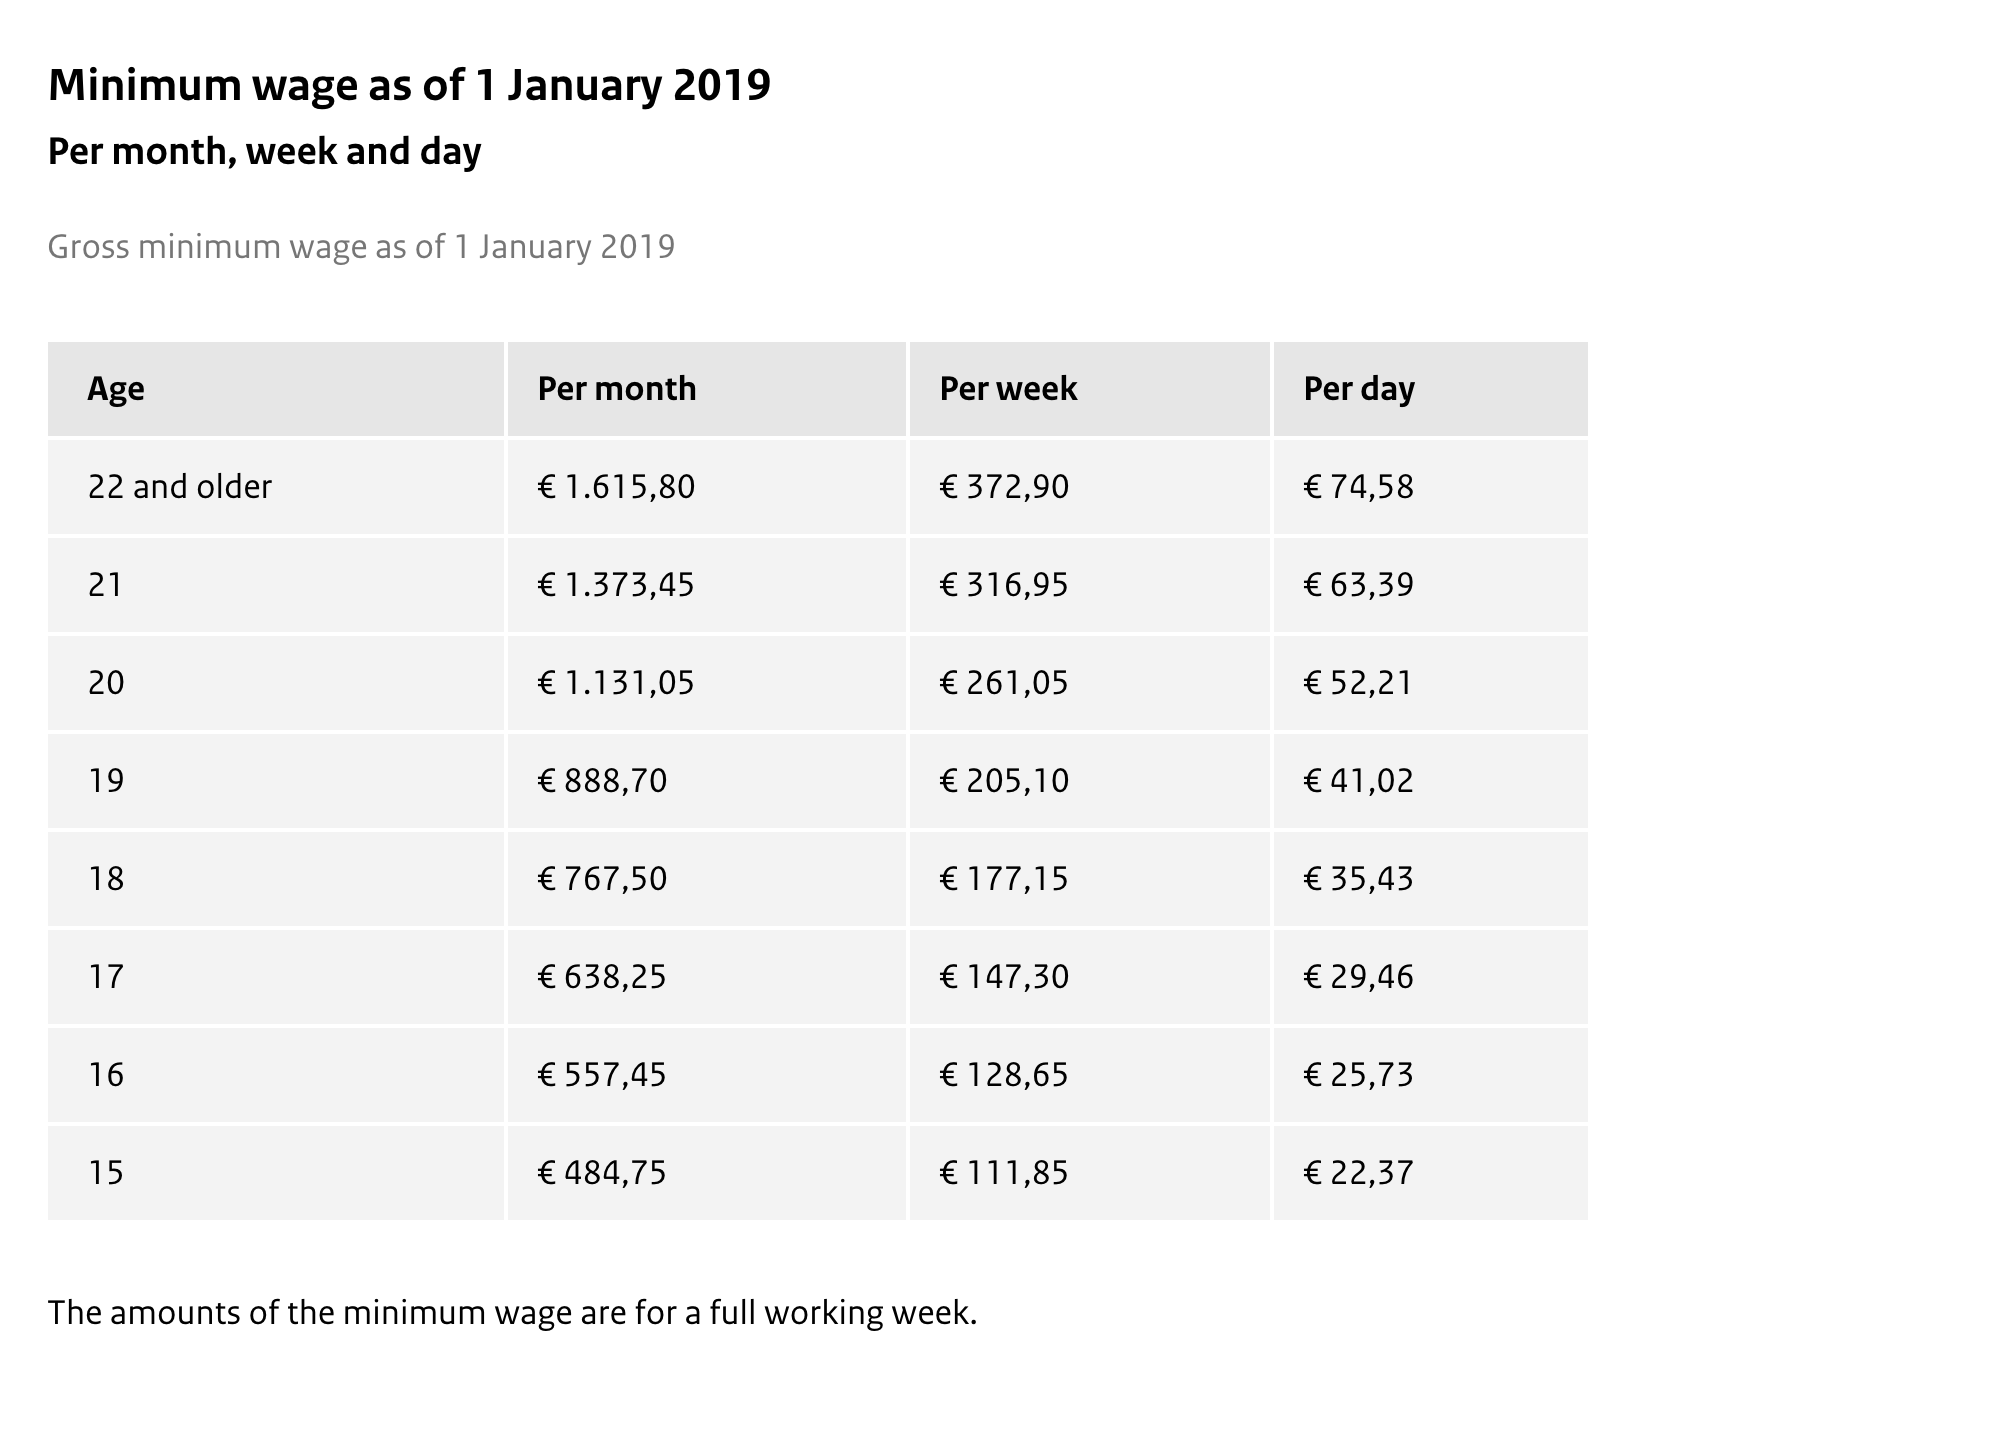 Минимальная средняя заработная плата в Нидерландах по состоянию на 1 января 2019 года. Источник: сайт Правительства Нидерландов